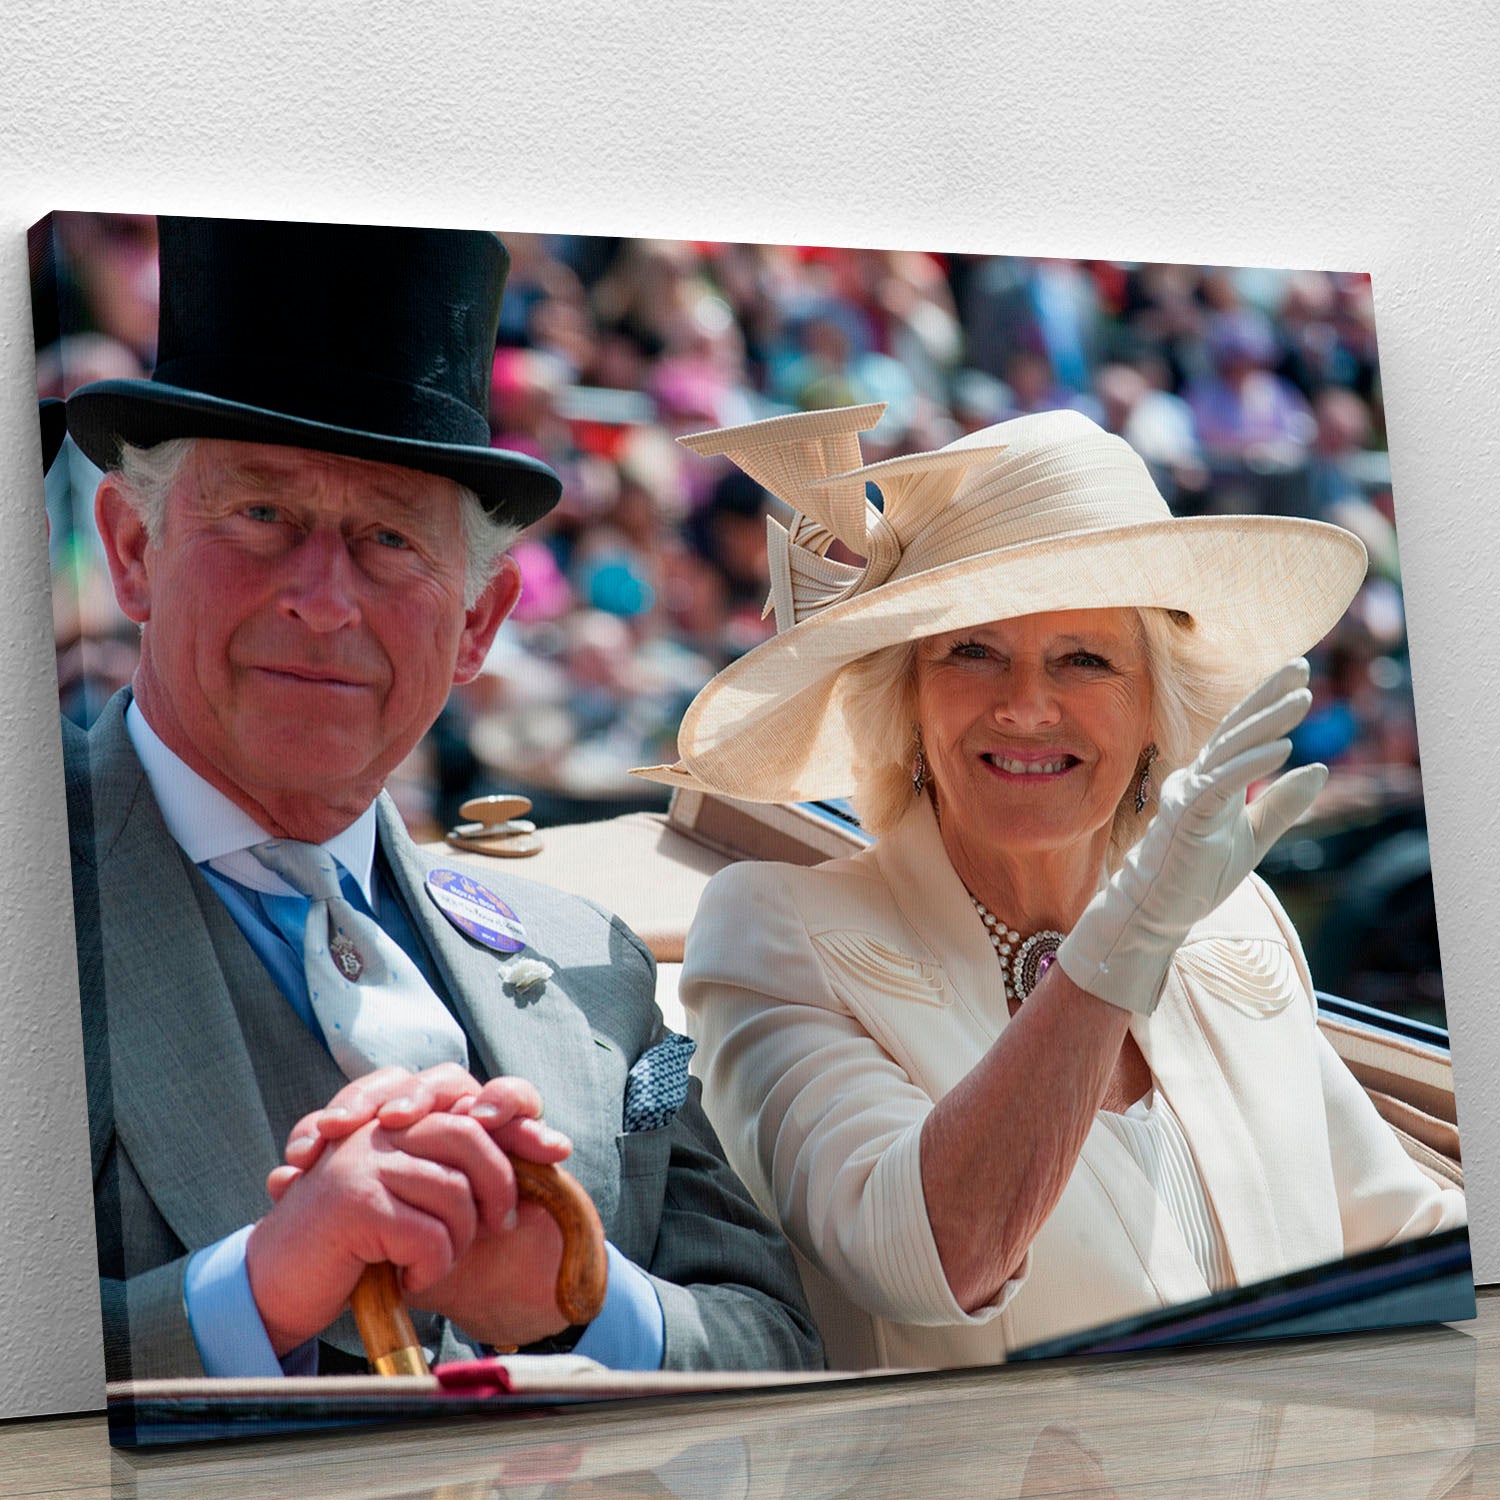 Prince Charles and Camilla at the Royal Ascot Canvas Print or Poster - Canvas Art Rocks - 1